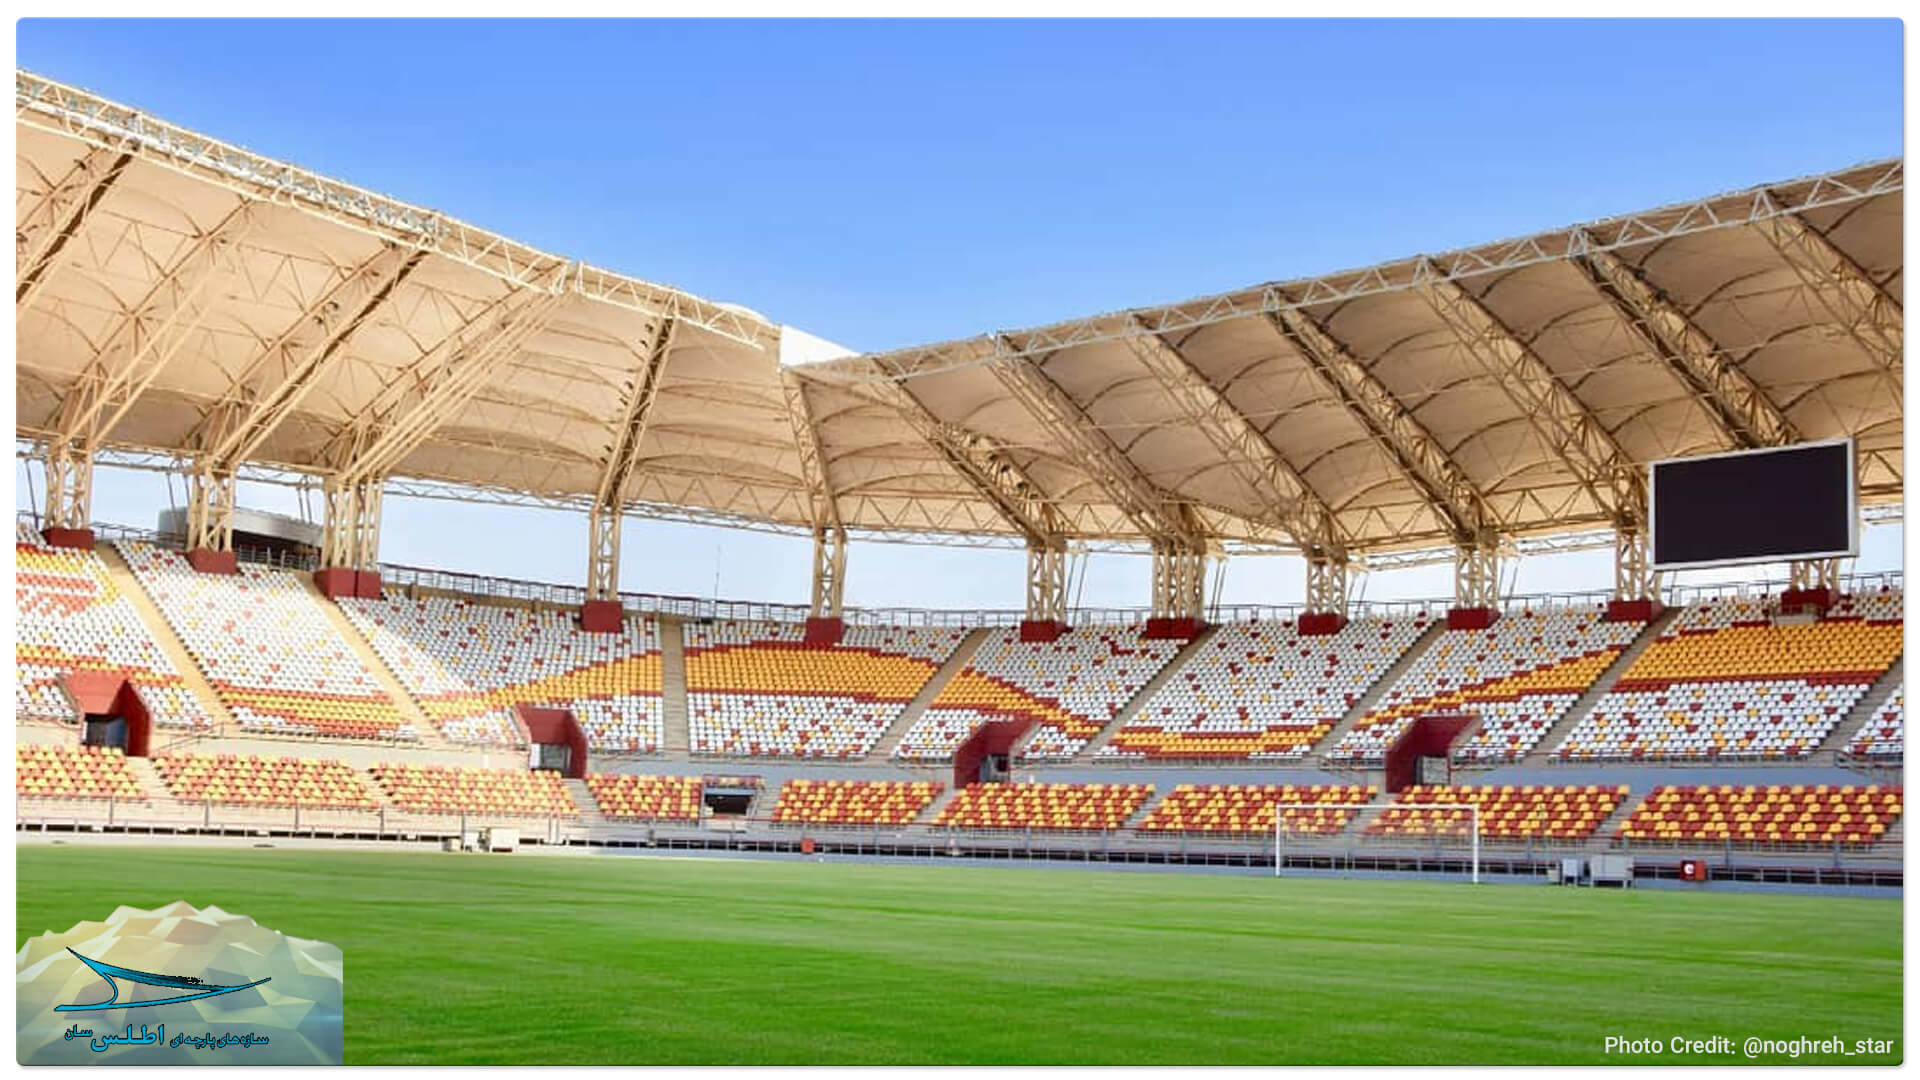 نمای زیبا از داخل استادیوم اختصاصی ورزشگاه فولاد خوزستان | اطلس سان